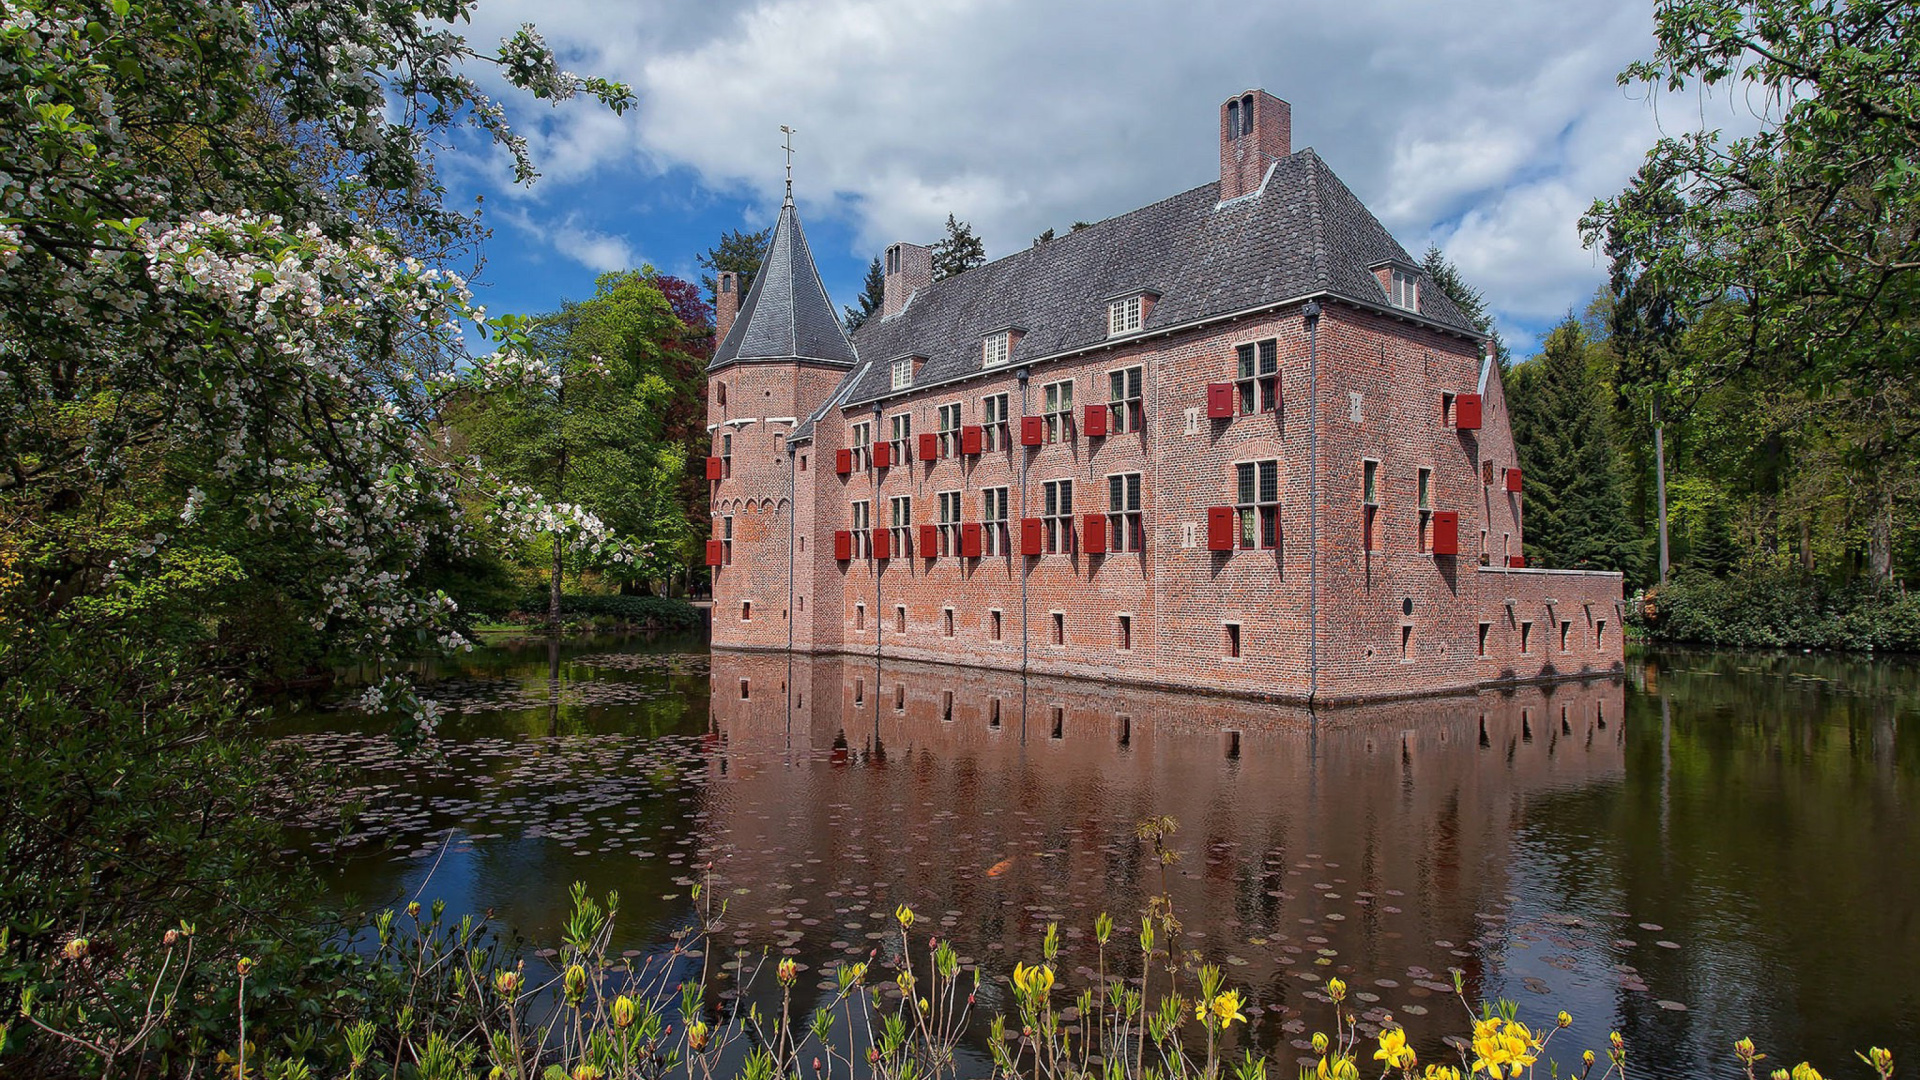 Oude Loo Castle in Apeldoorn in Netherlands screenshot #1 1920x1080